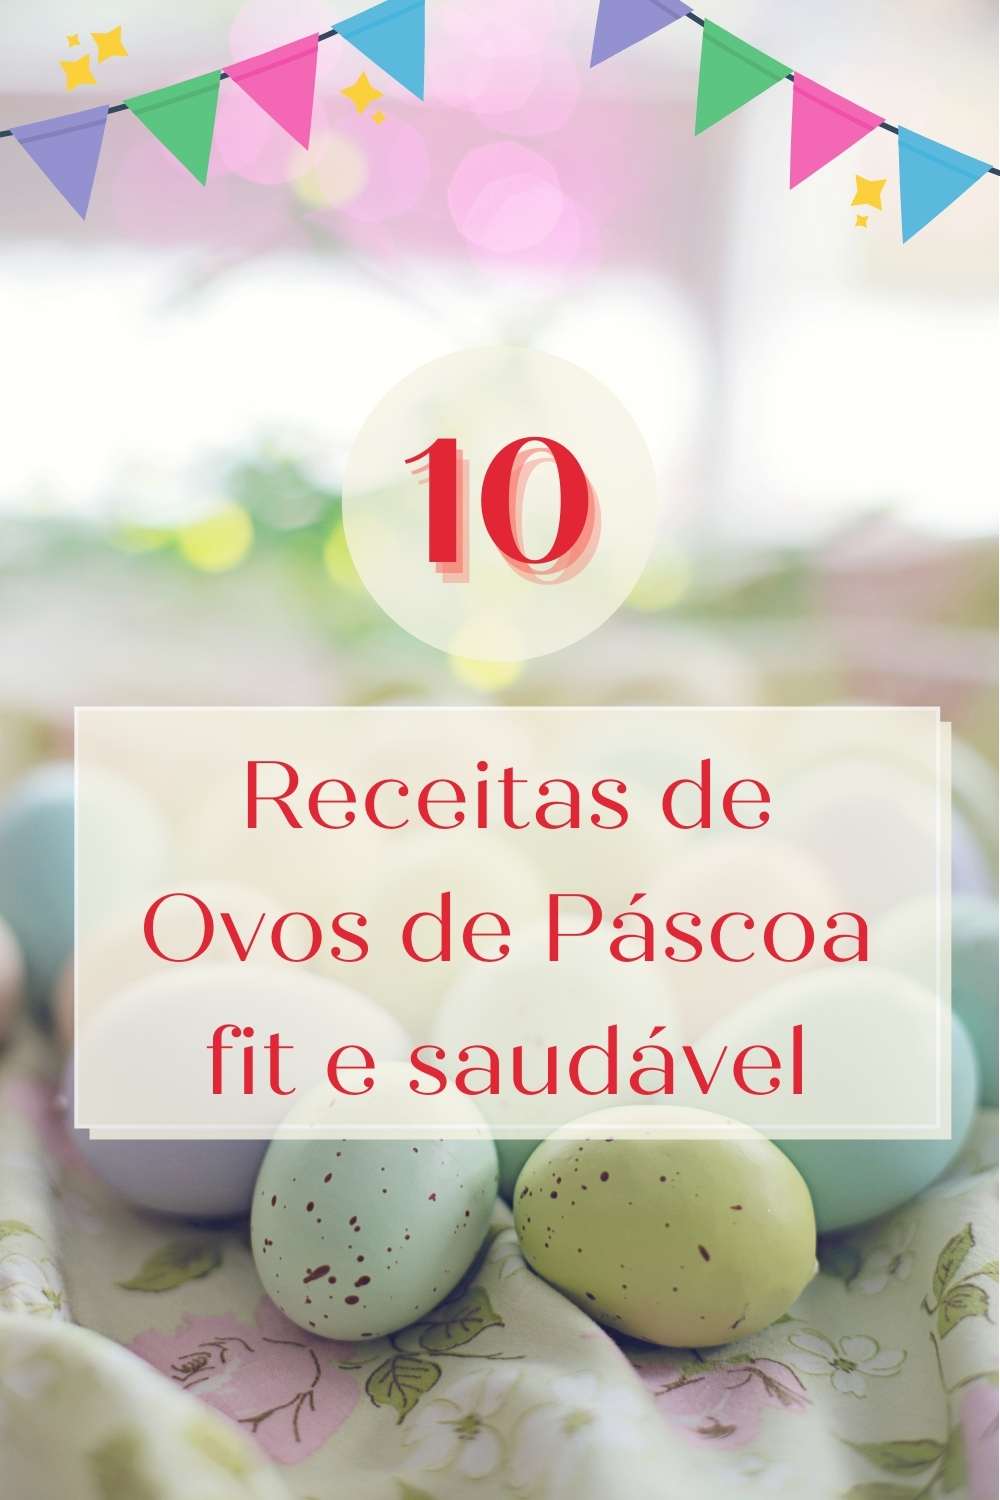 Receitas de ovos de páscoa fit e saudável - com vídeos